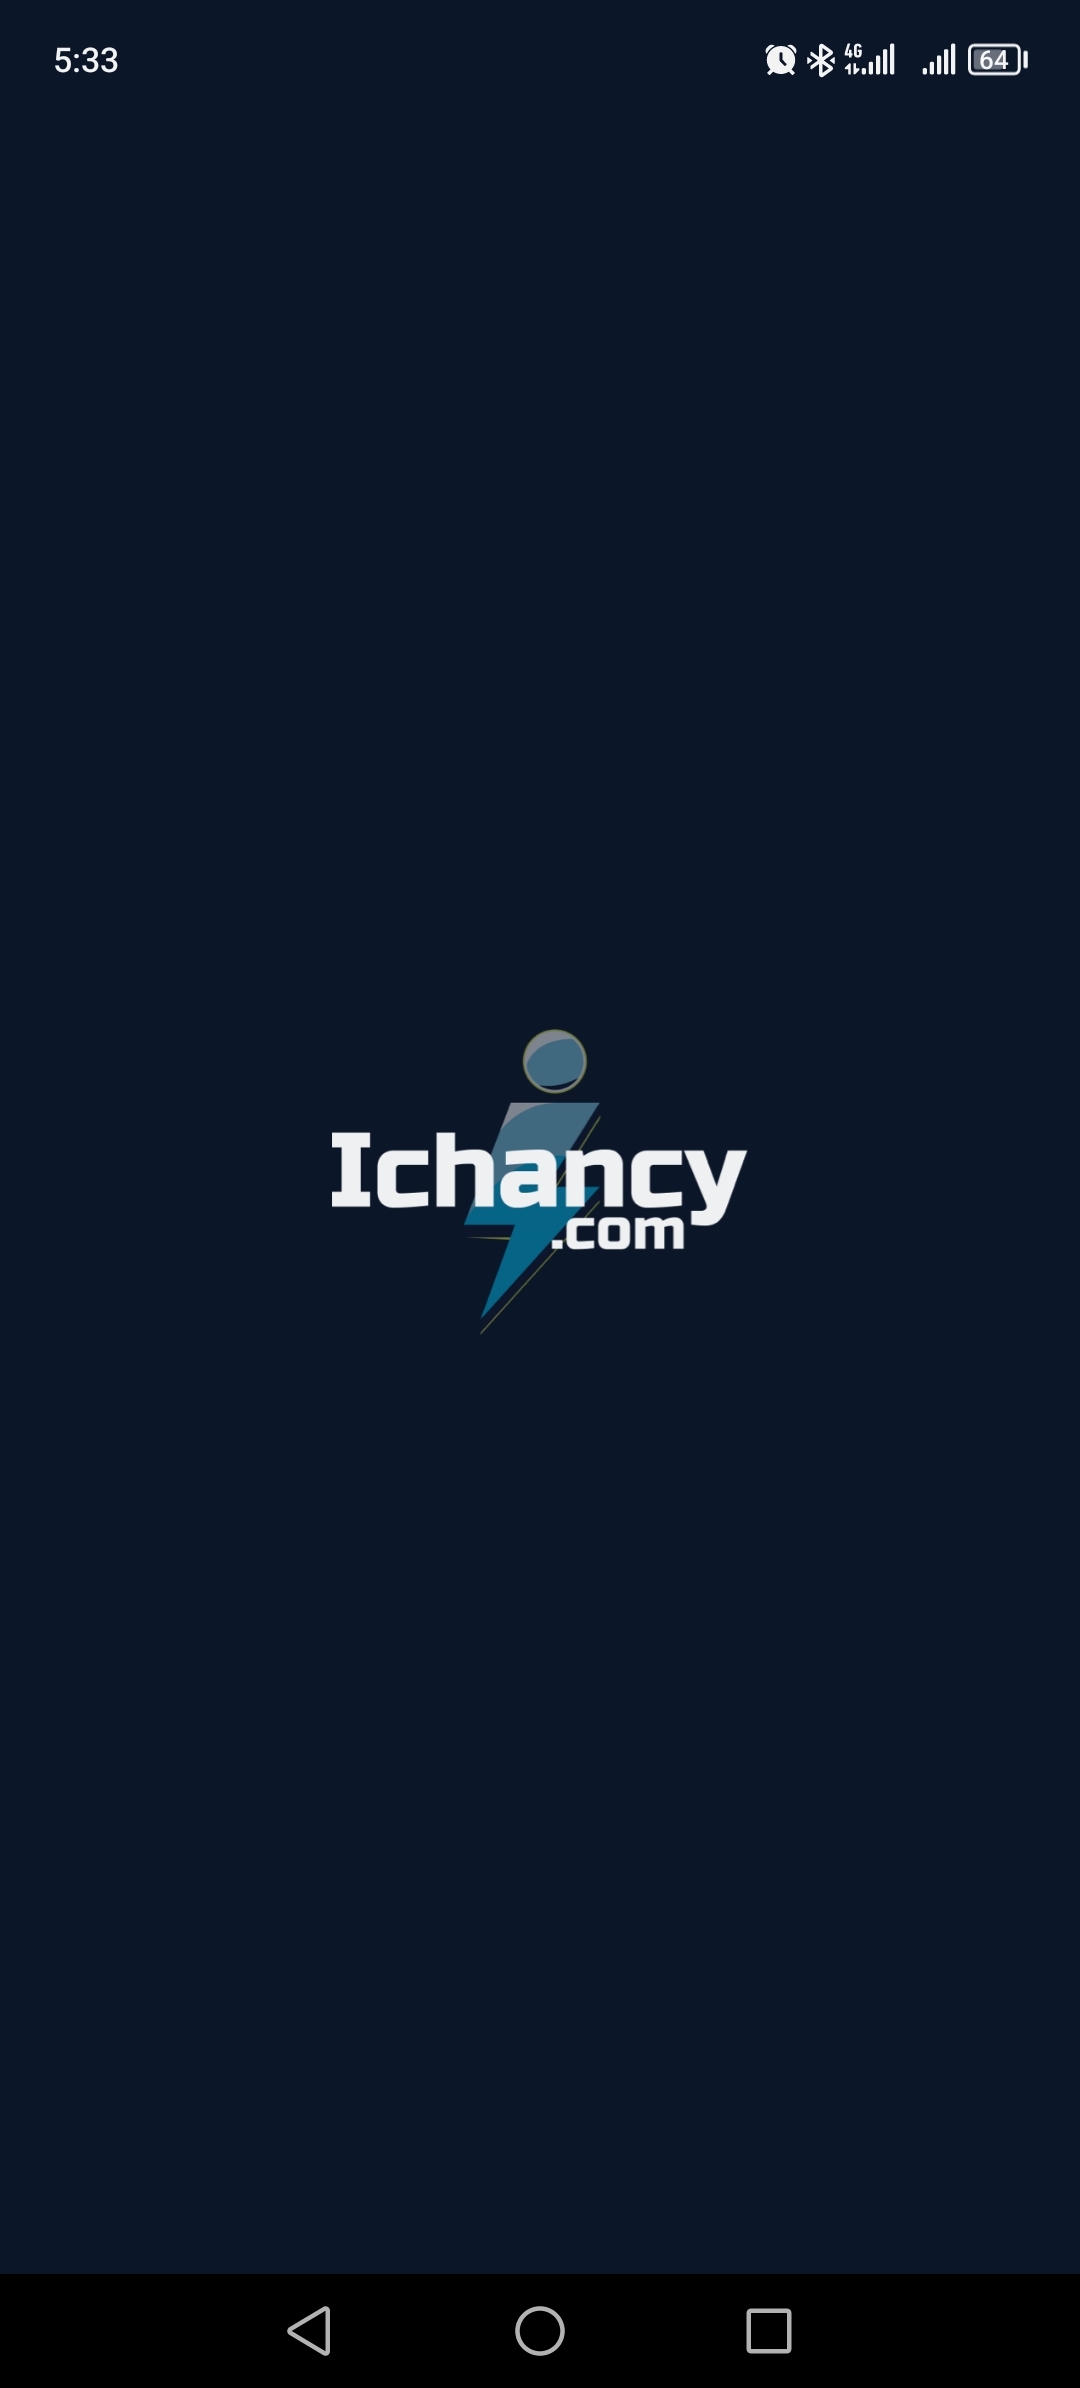 More information about "تطبيق Ichancy النسخة التجريبية"